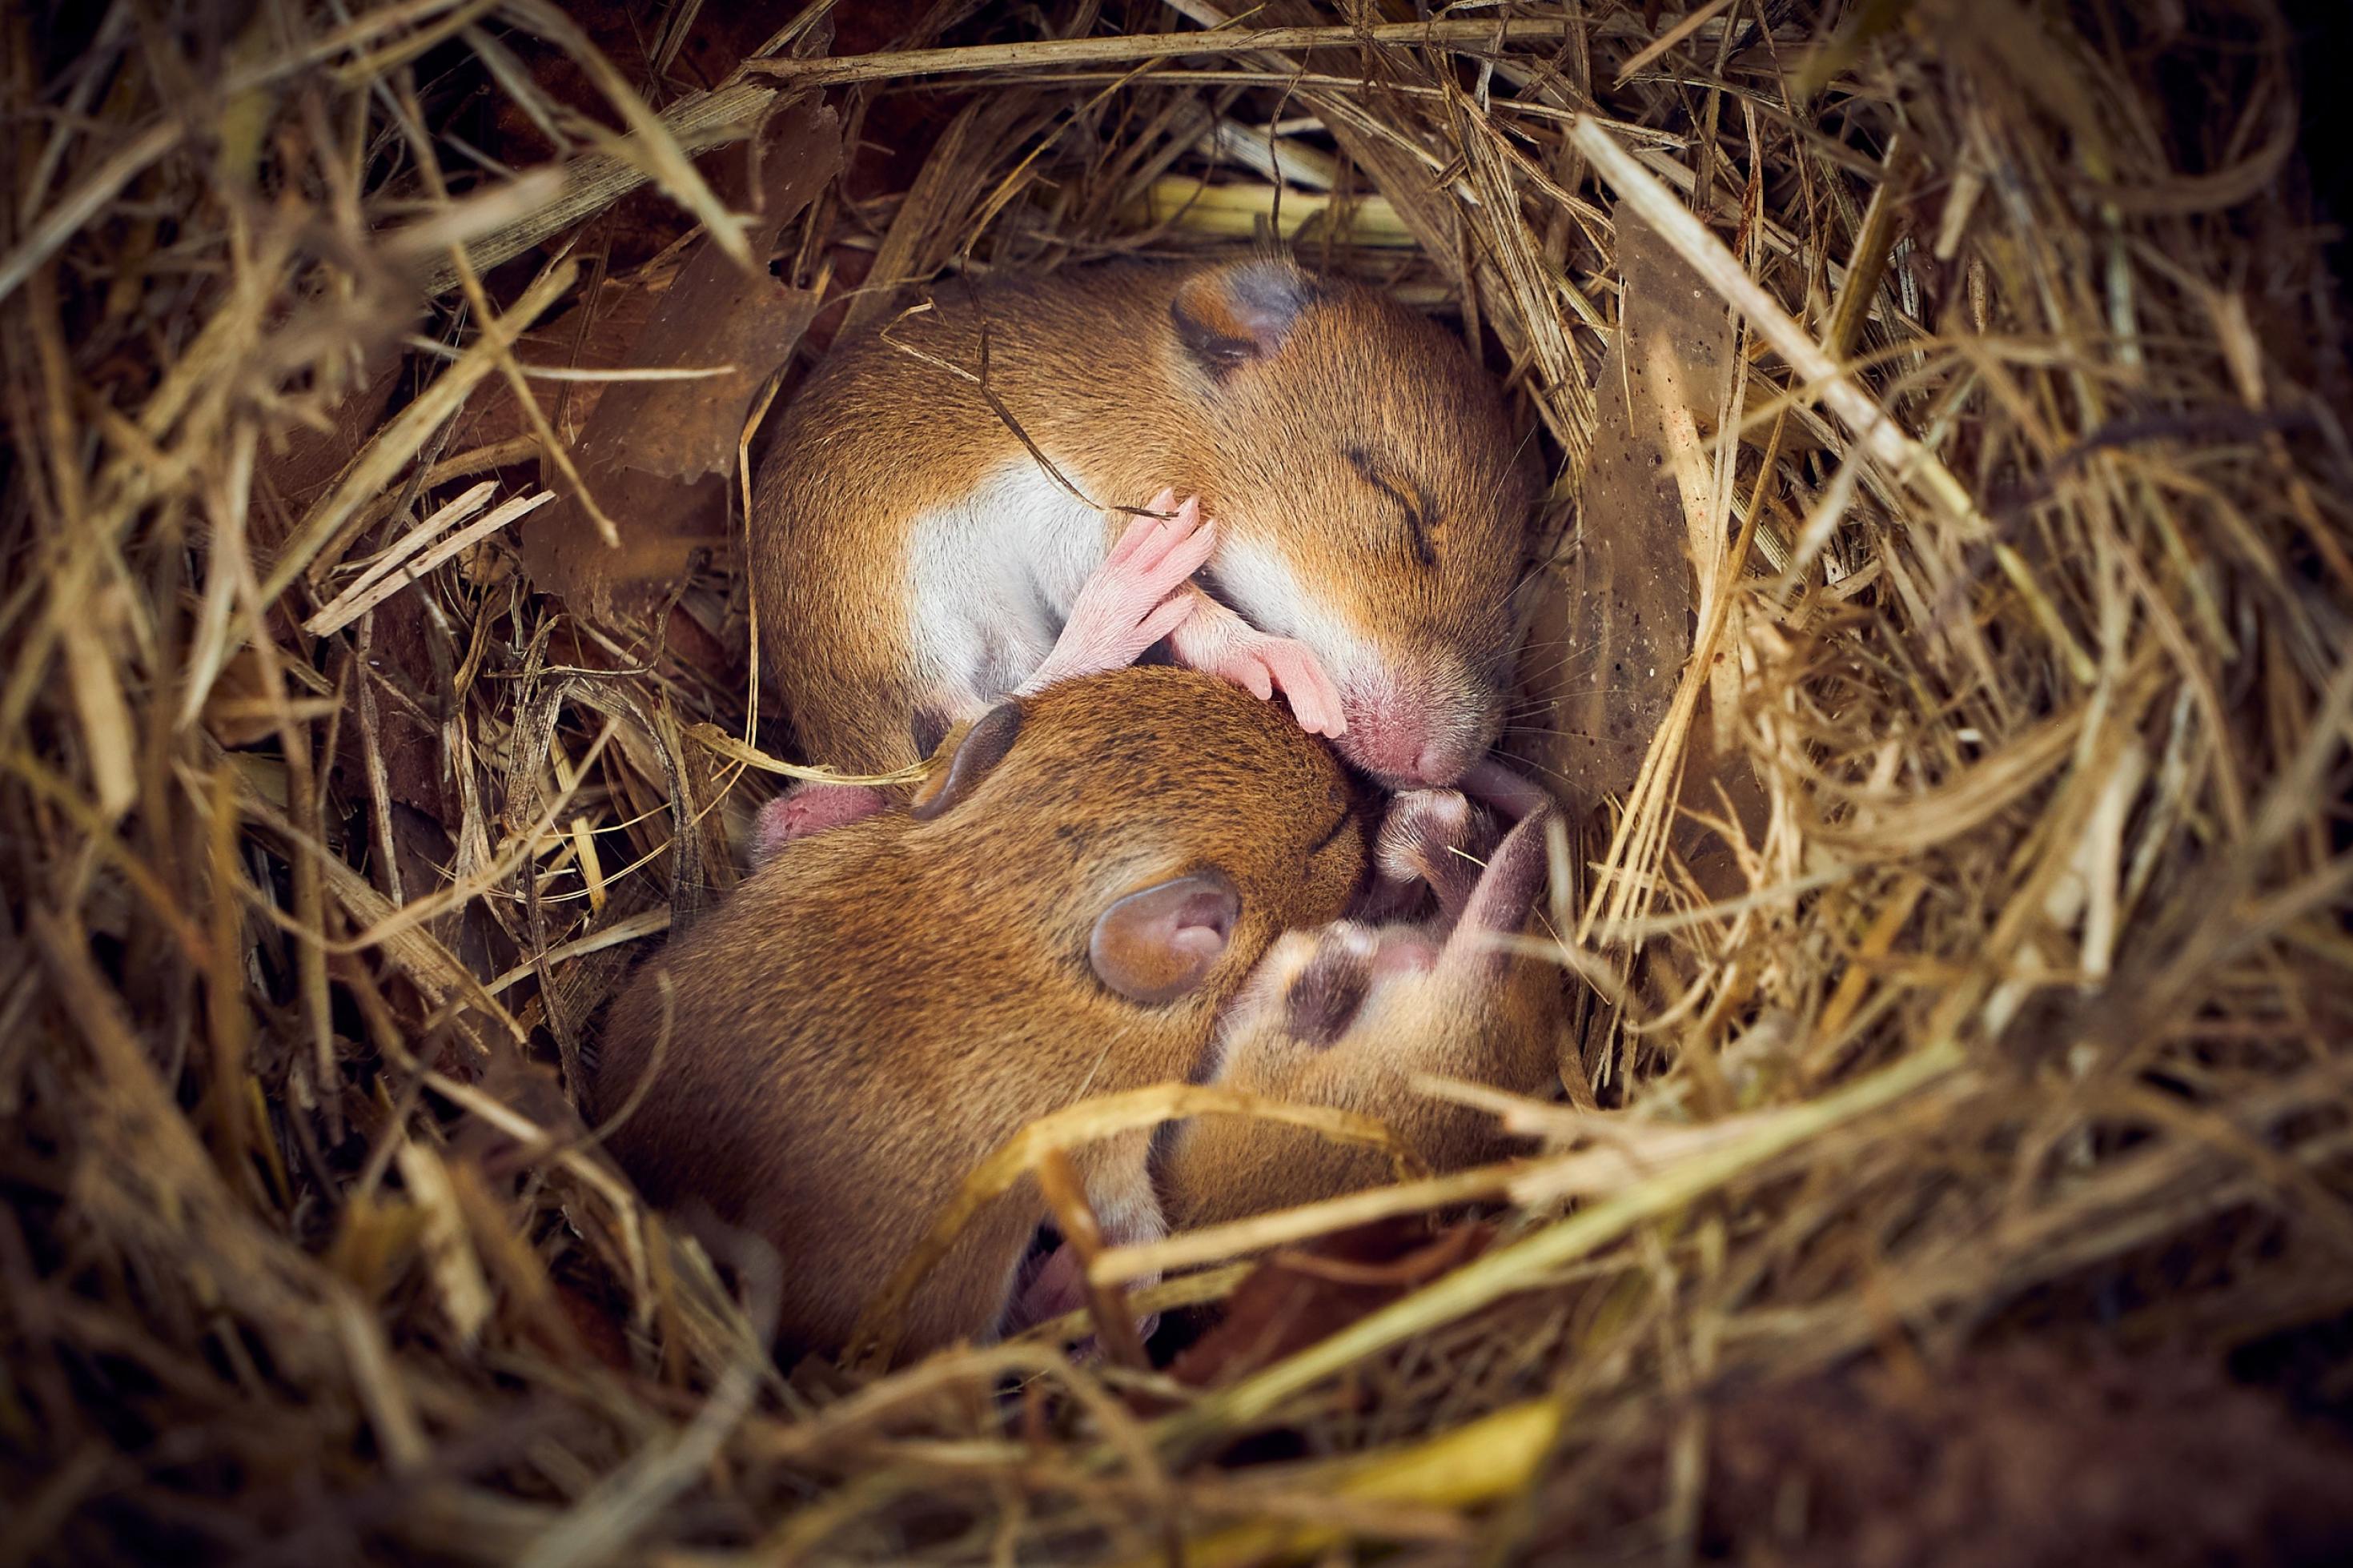 Drei Mäuse schlafen aneinander gekuschelt in einem gemütlichen Nest aus Stroh.